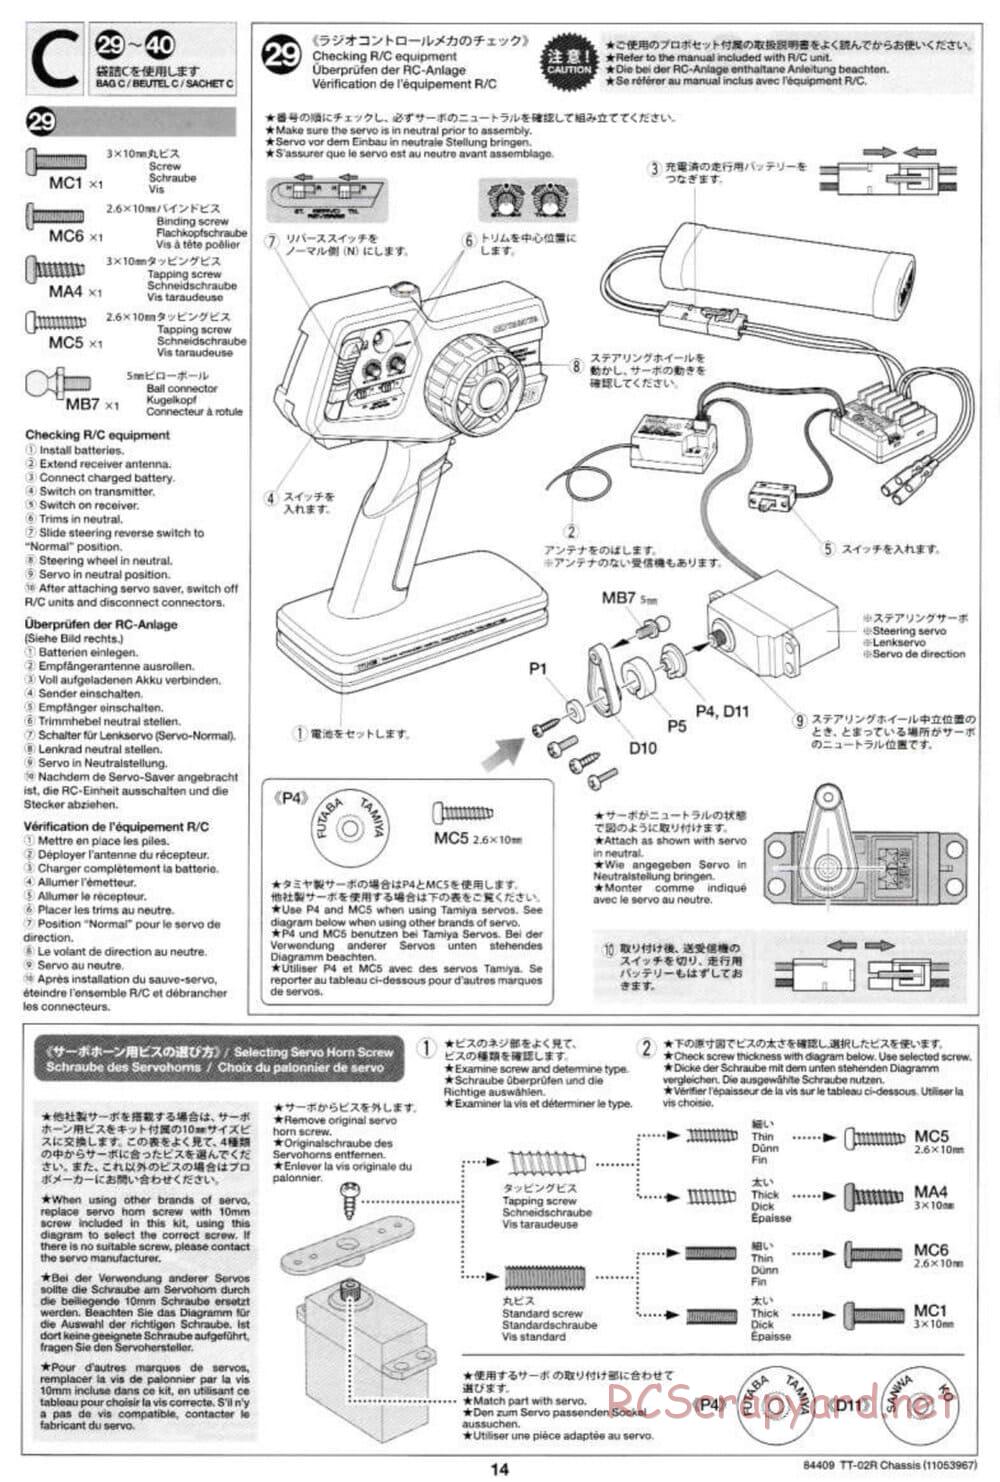 Tamiya - TT-02R Chassis - Manual - Page 14